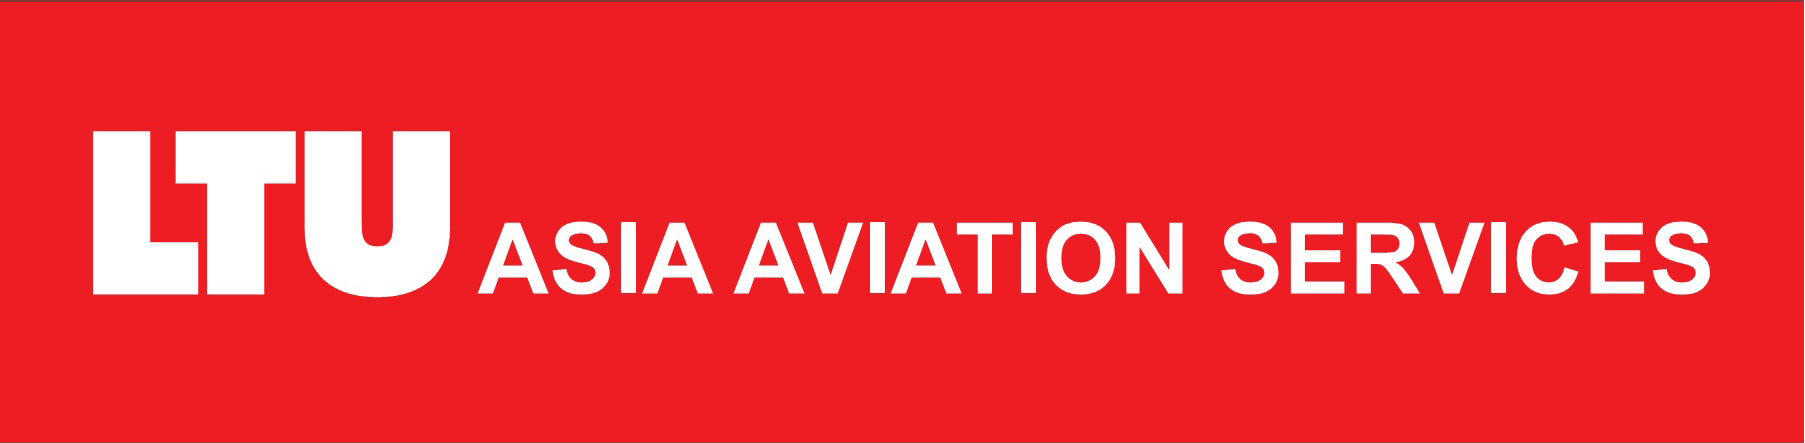 LTU Asia Aviation Services